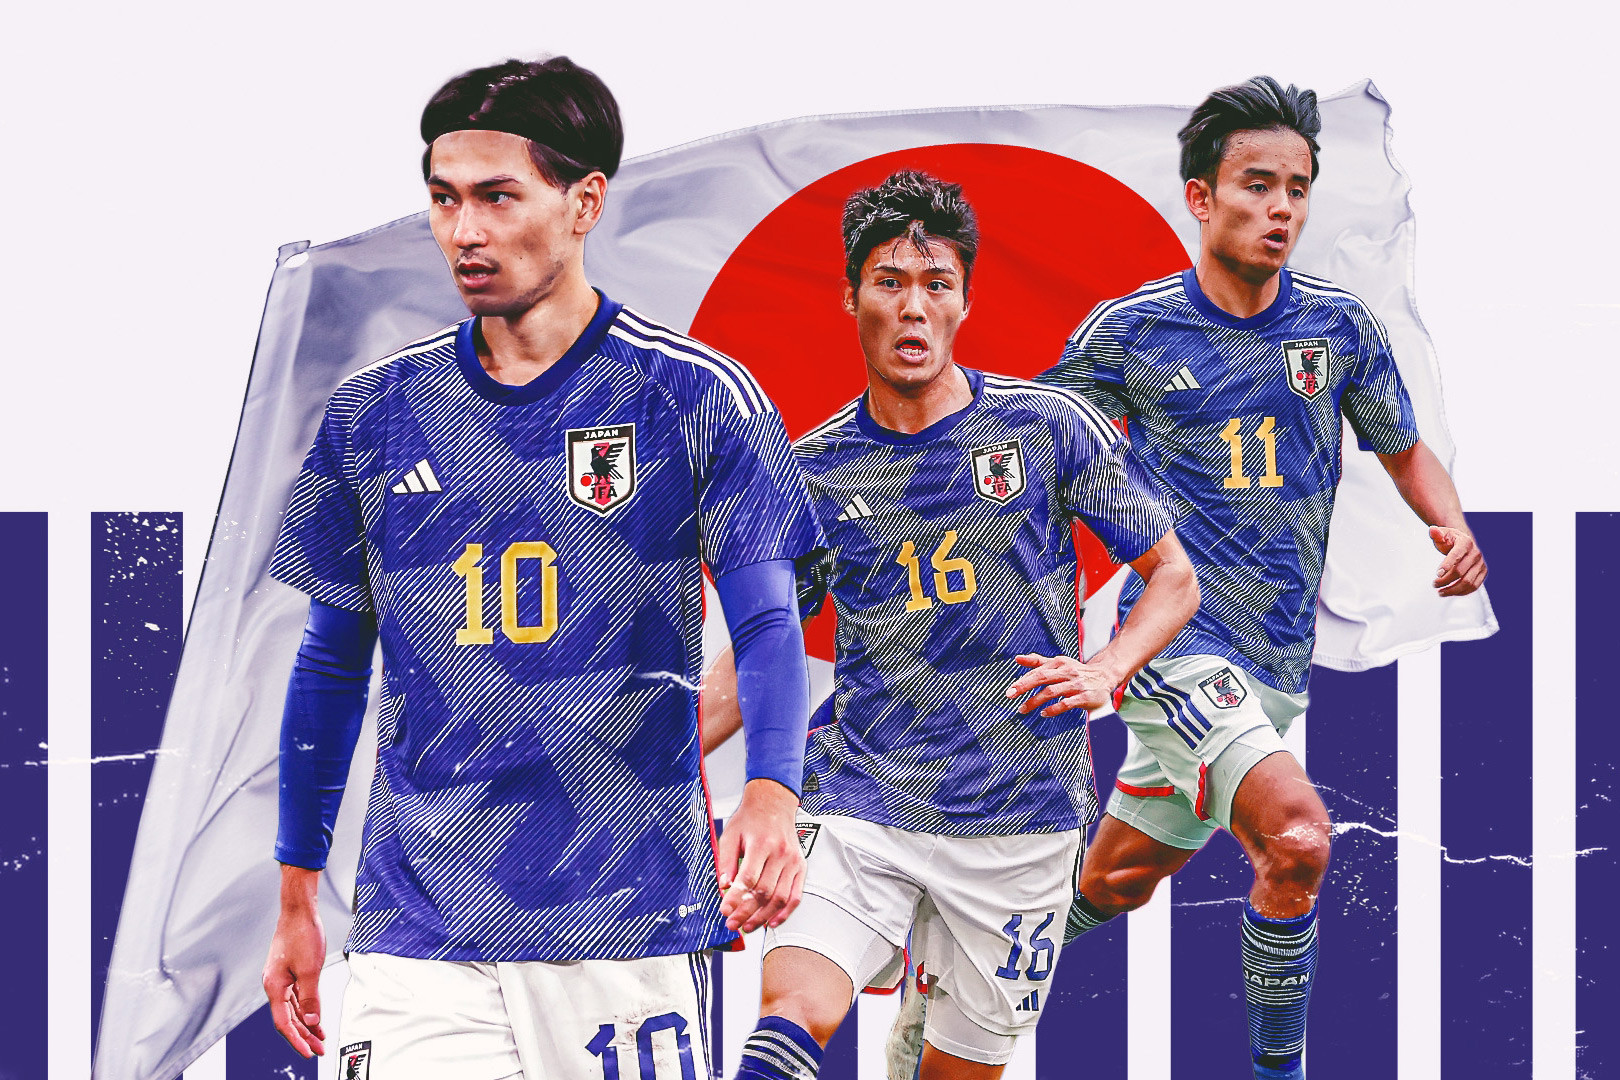 Năm vũ khí của Nhật Bản ở World Cup 2022